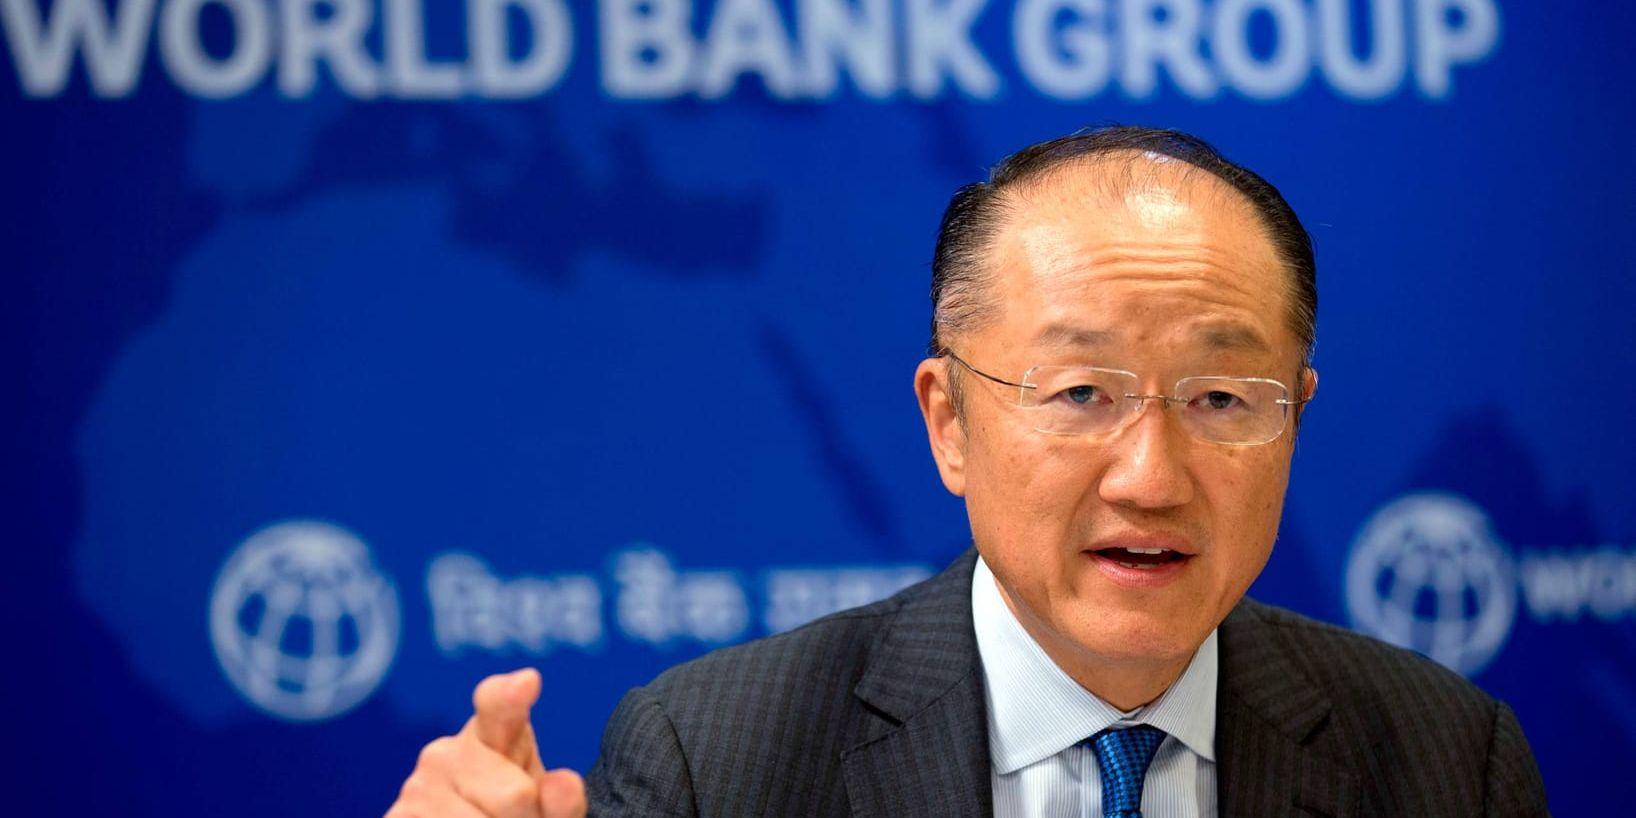 Världsbankens chef Jim Yong Kim får förnyat förtroende av bankens styrelse. Arkivbild.